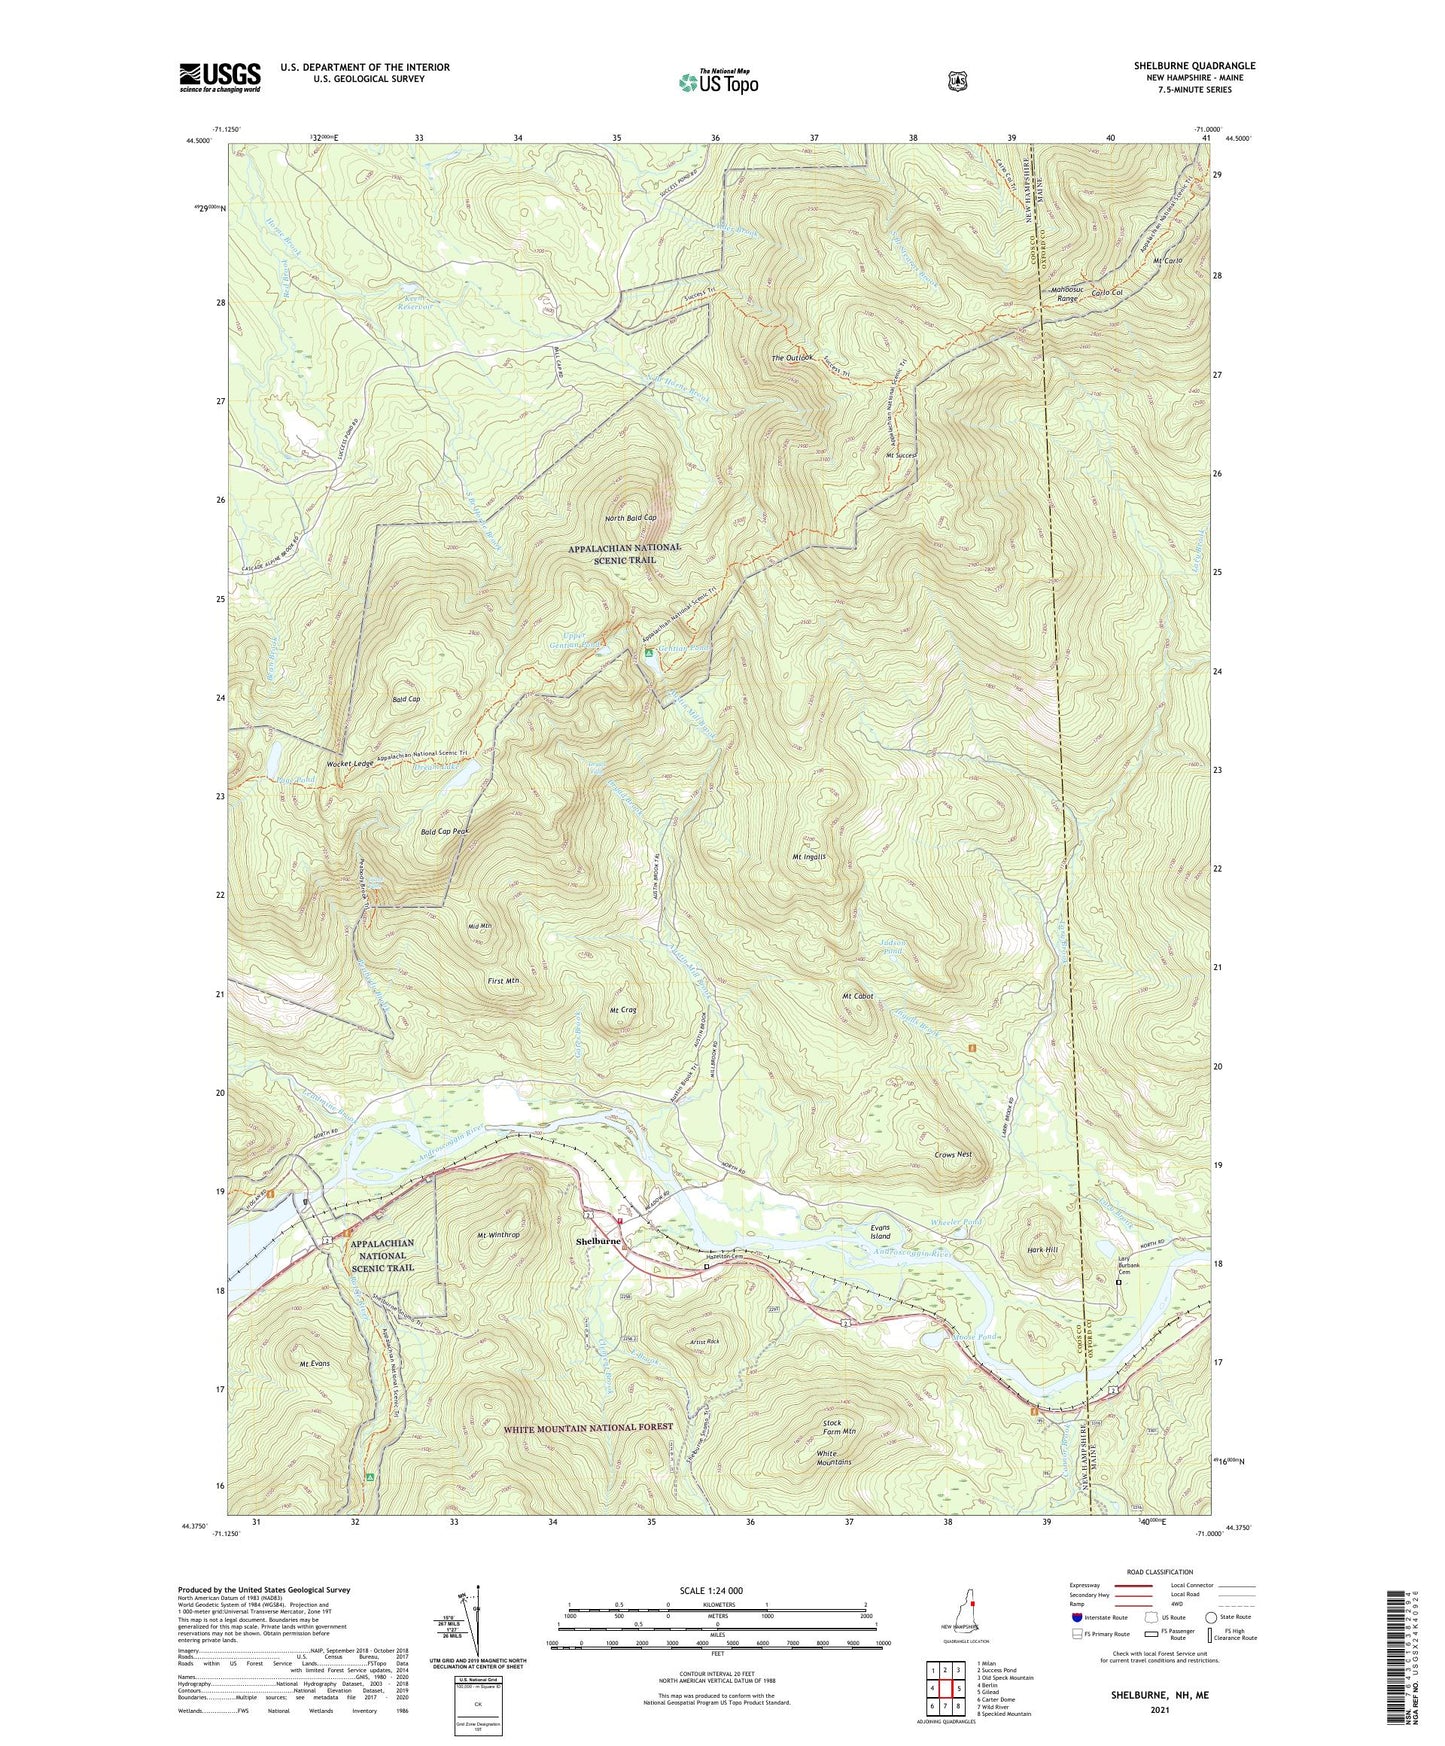 Shelburne New Hampshire US Topo Map Image